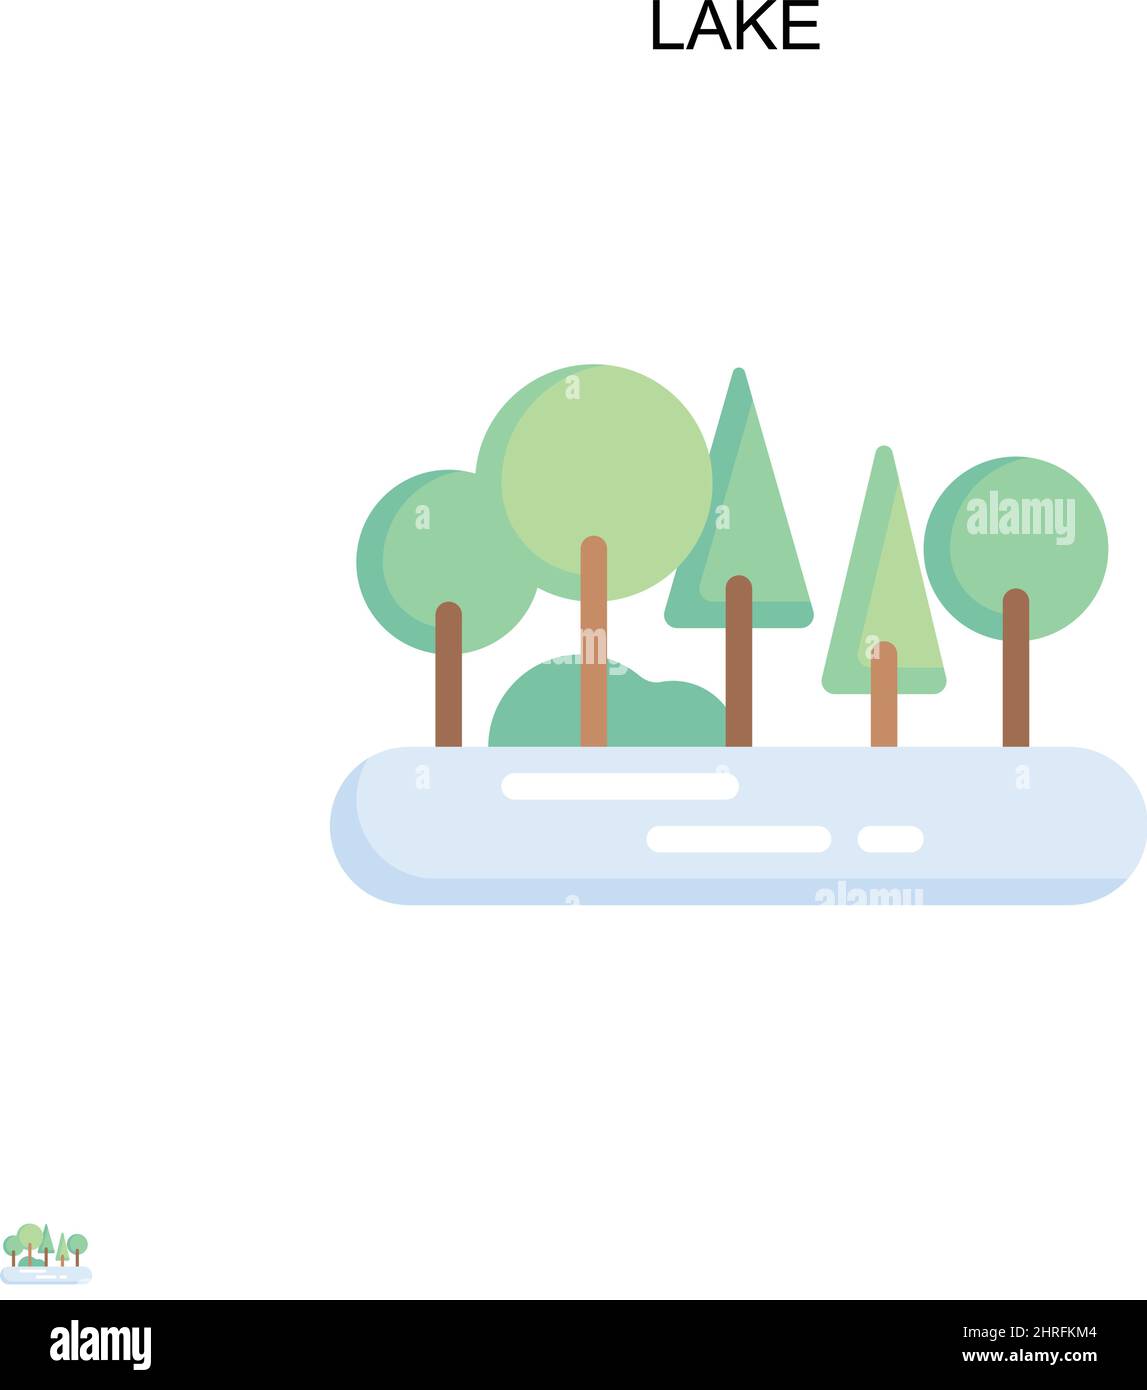 Lake Simple Vektor-Symbol. Illustration Symbol Design-Vorlage für Web mobile UI-Element. Stock Vektor